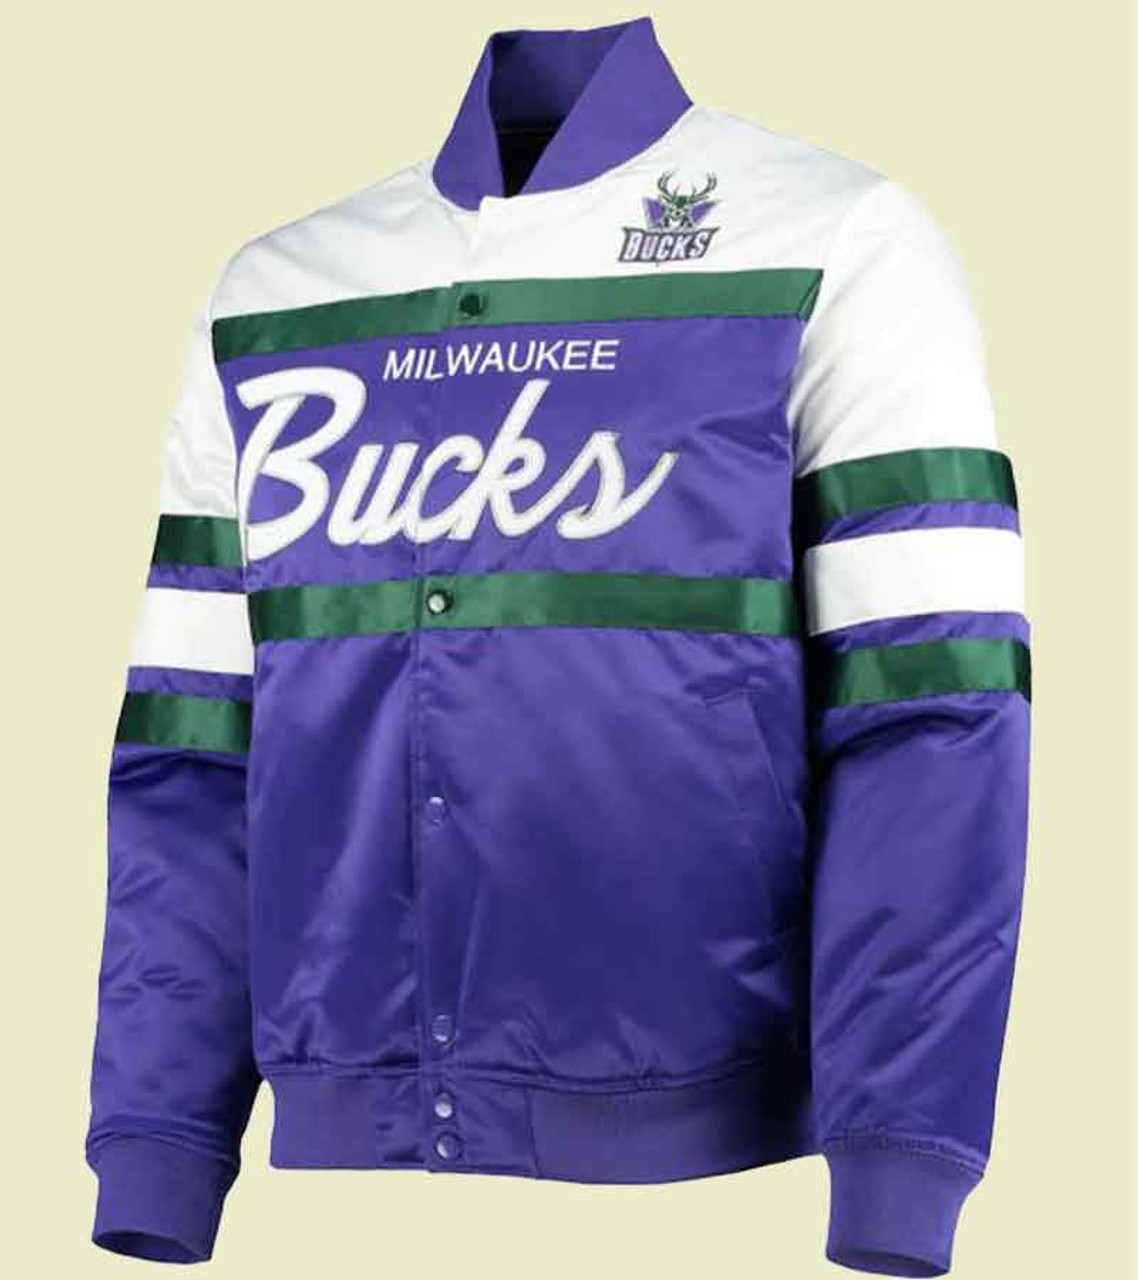 Vintage Purple Varsity Jacket